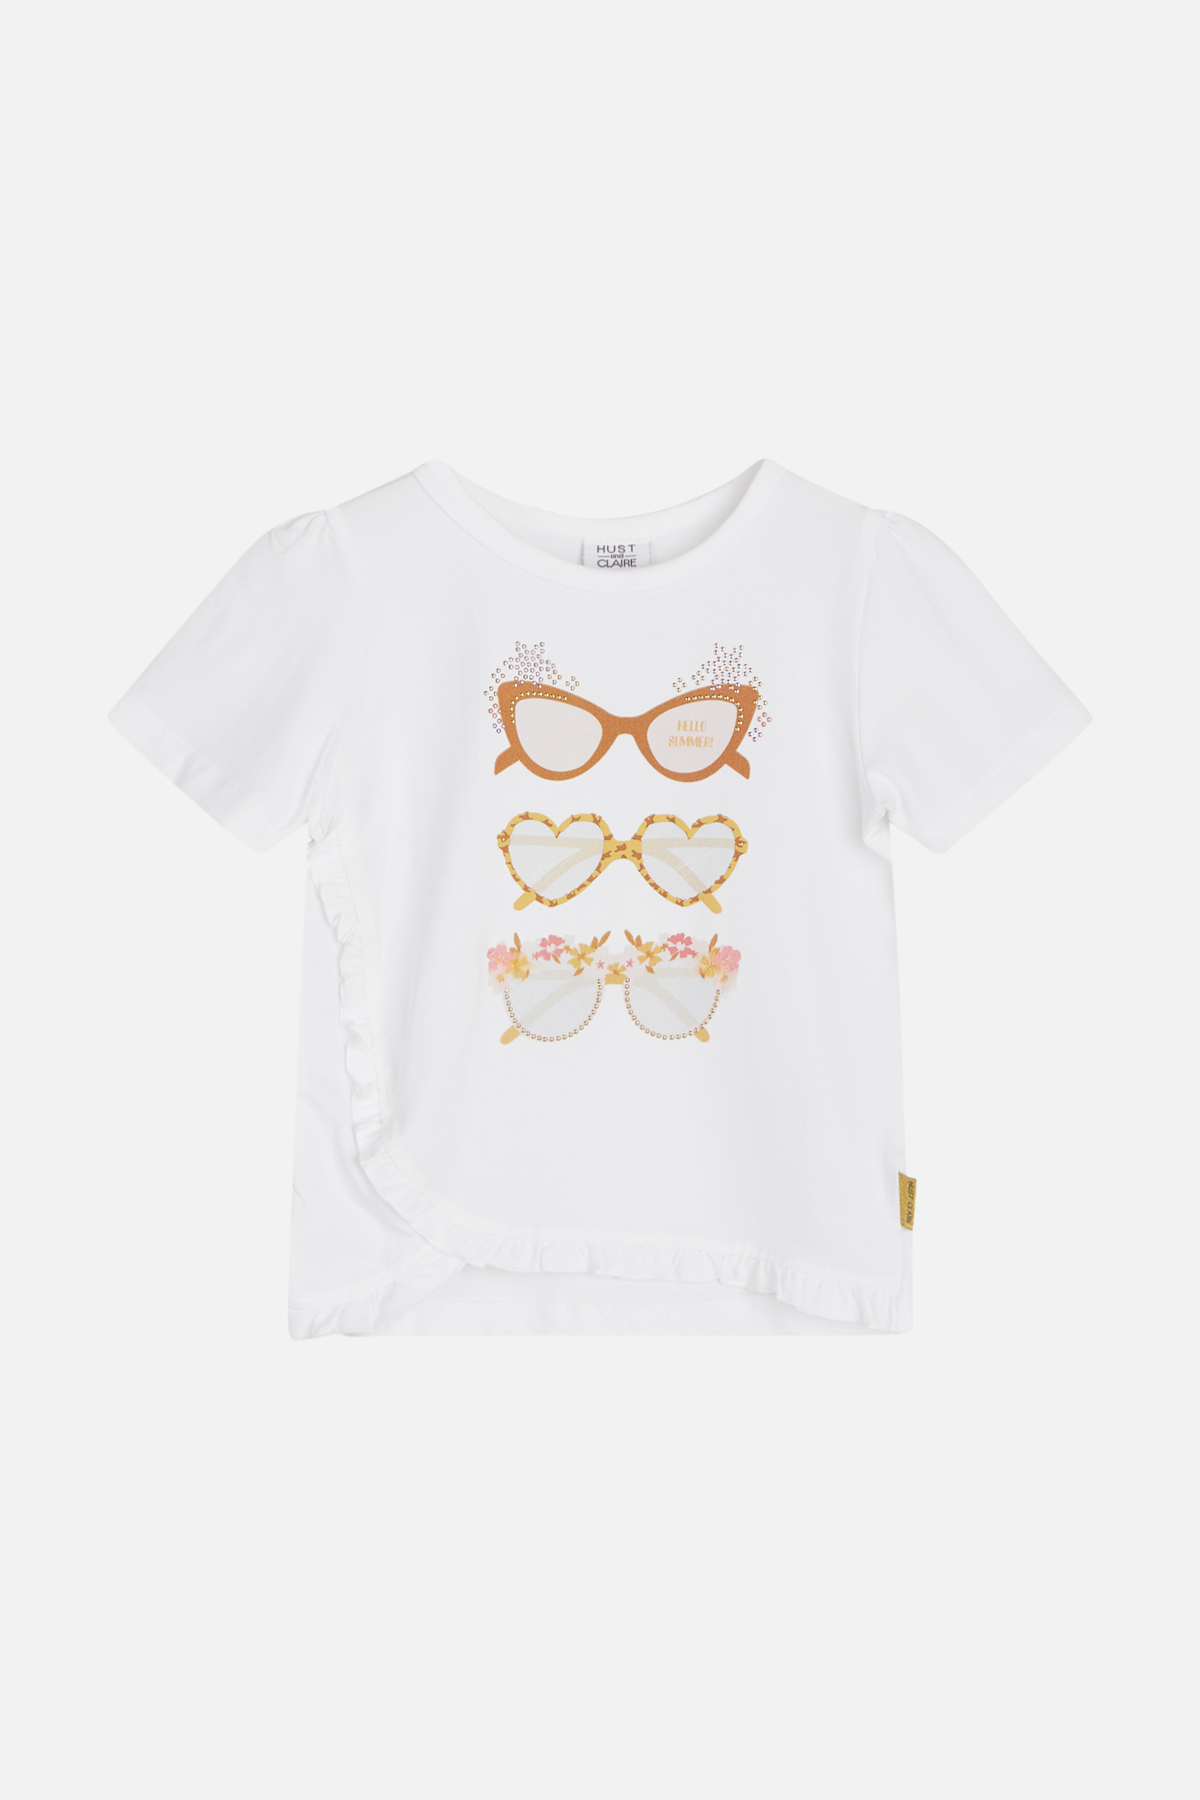 T-Shirt beige/braun/weiß 92 Hust and Claire Brillen